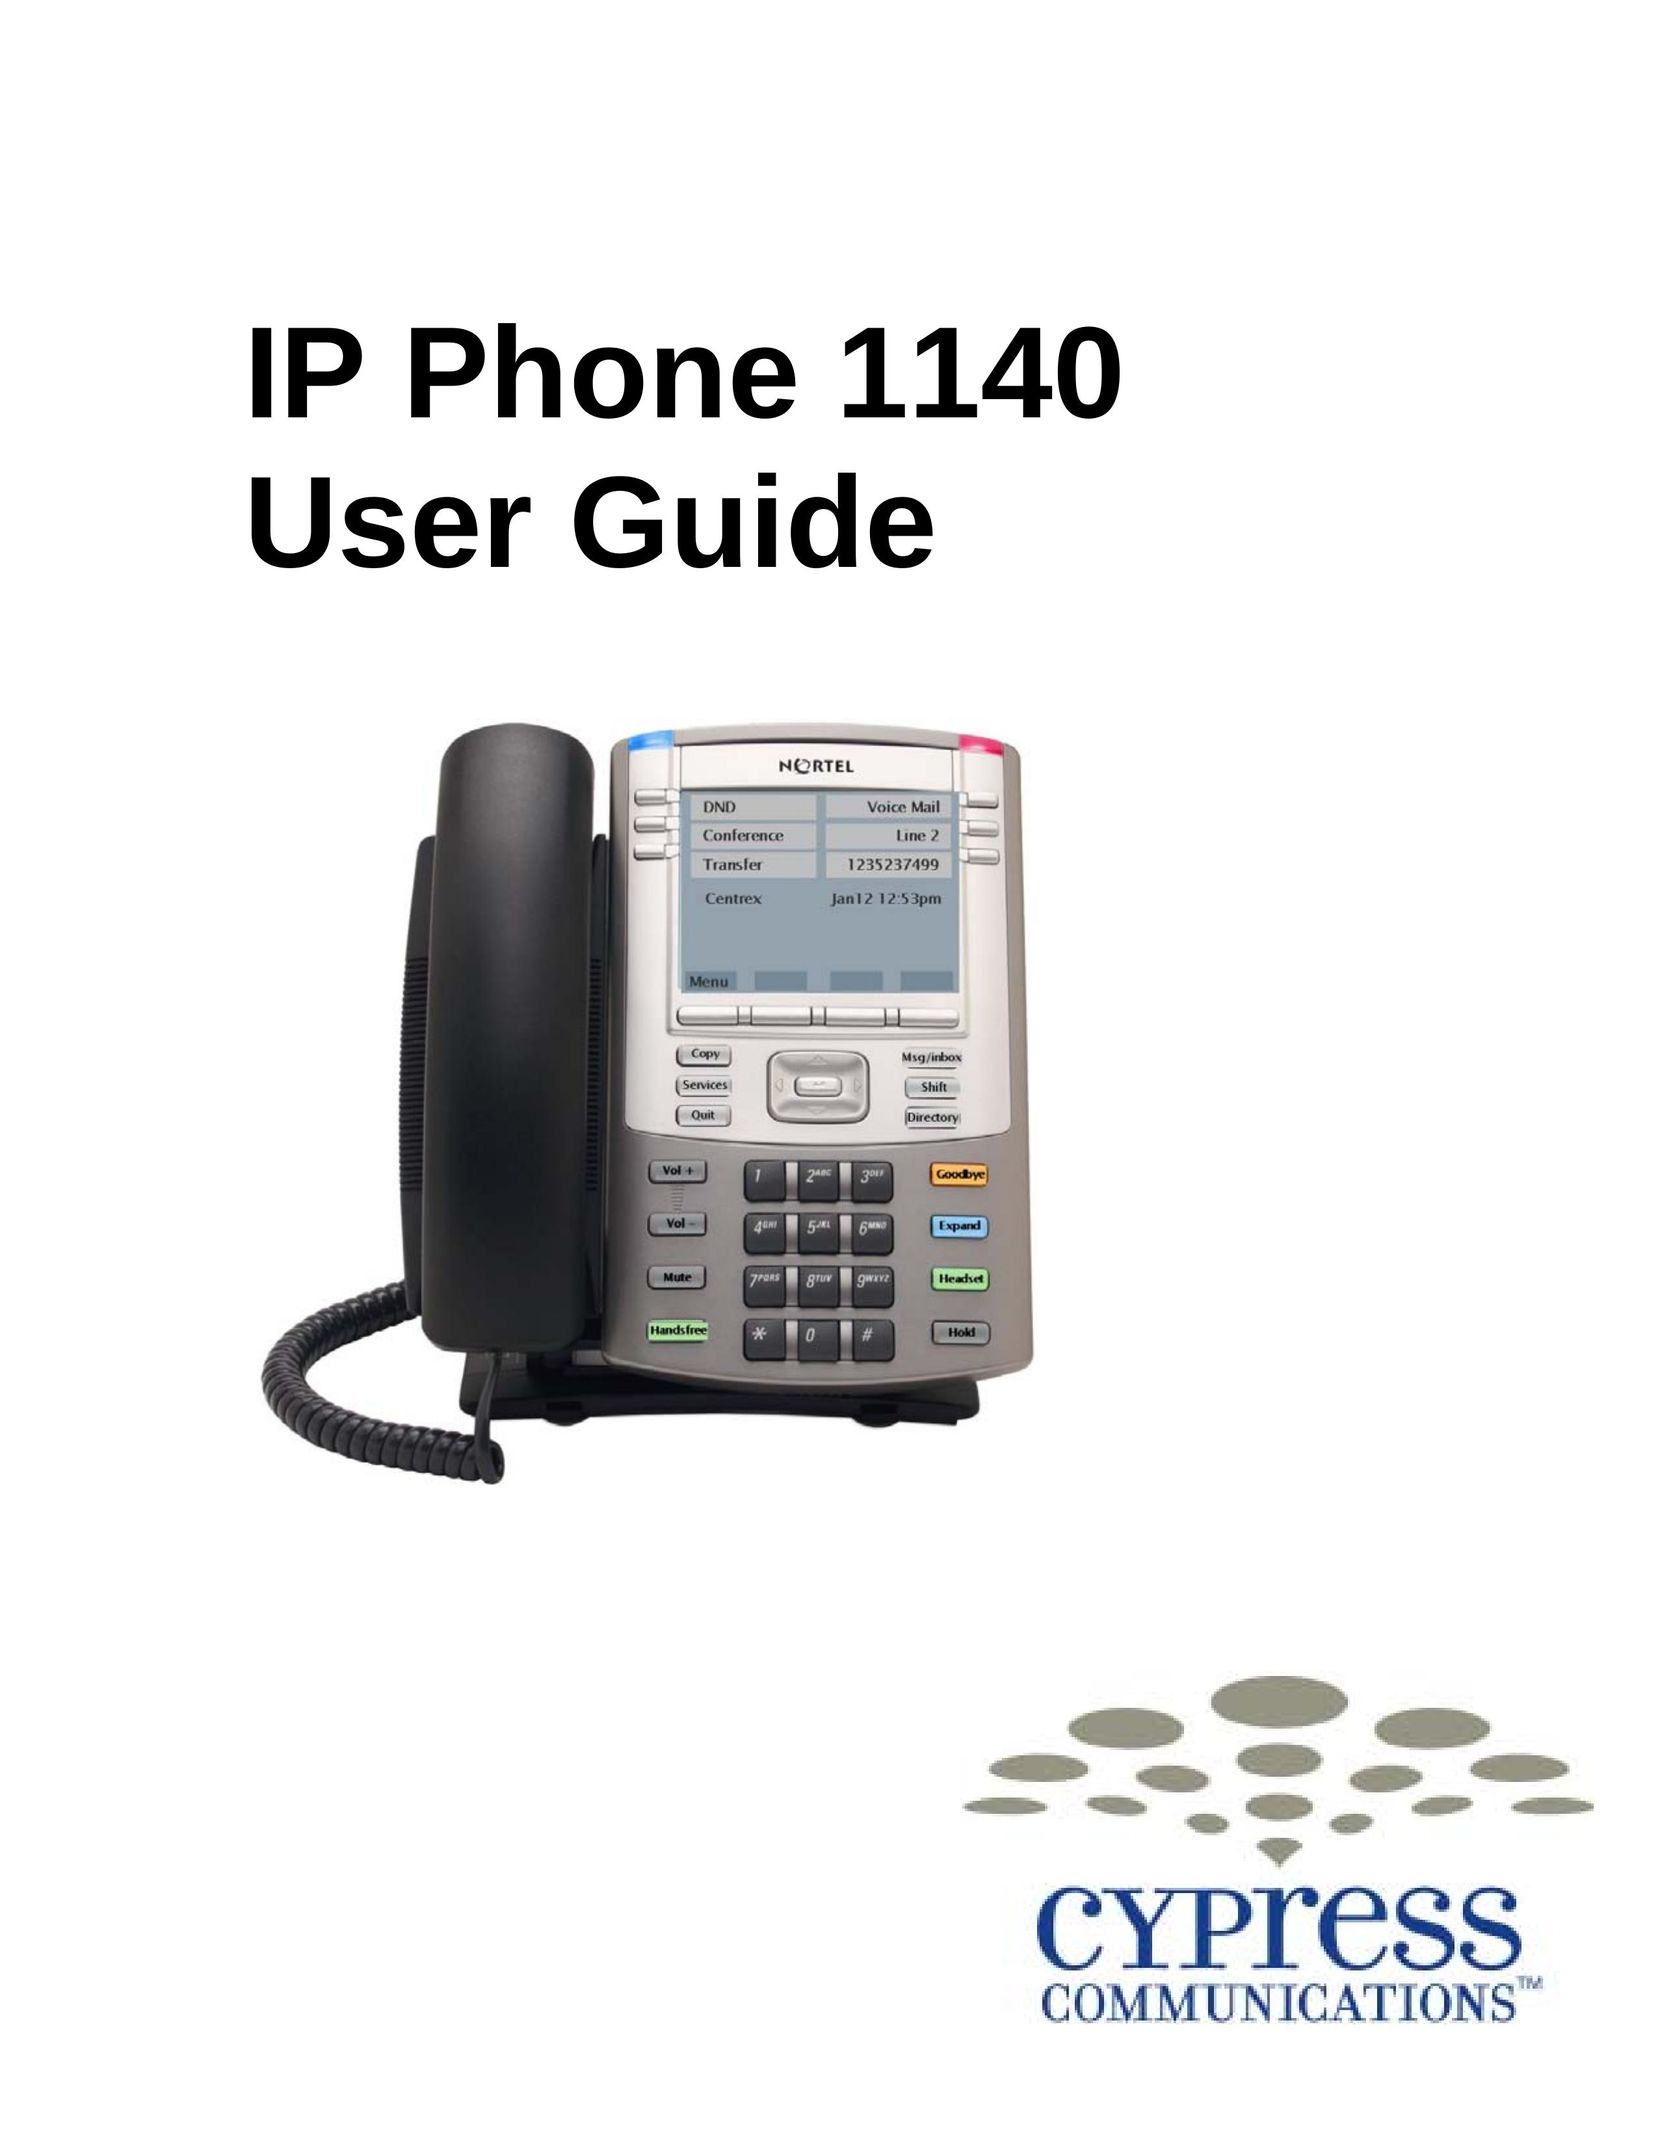 Cypress 1140 IP Phone User Manual